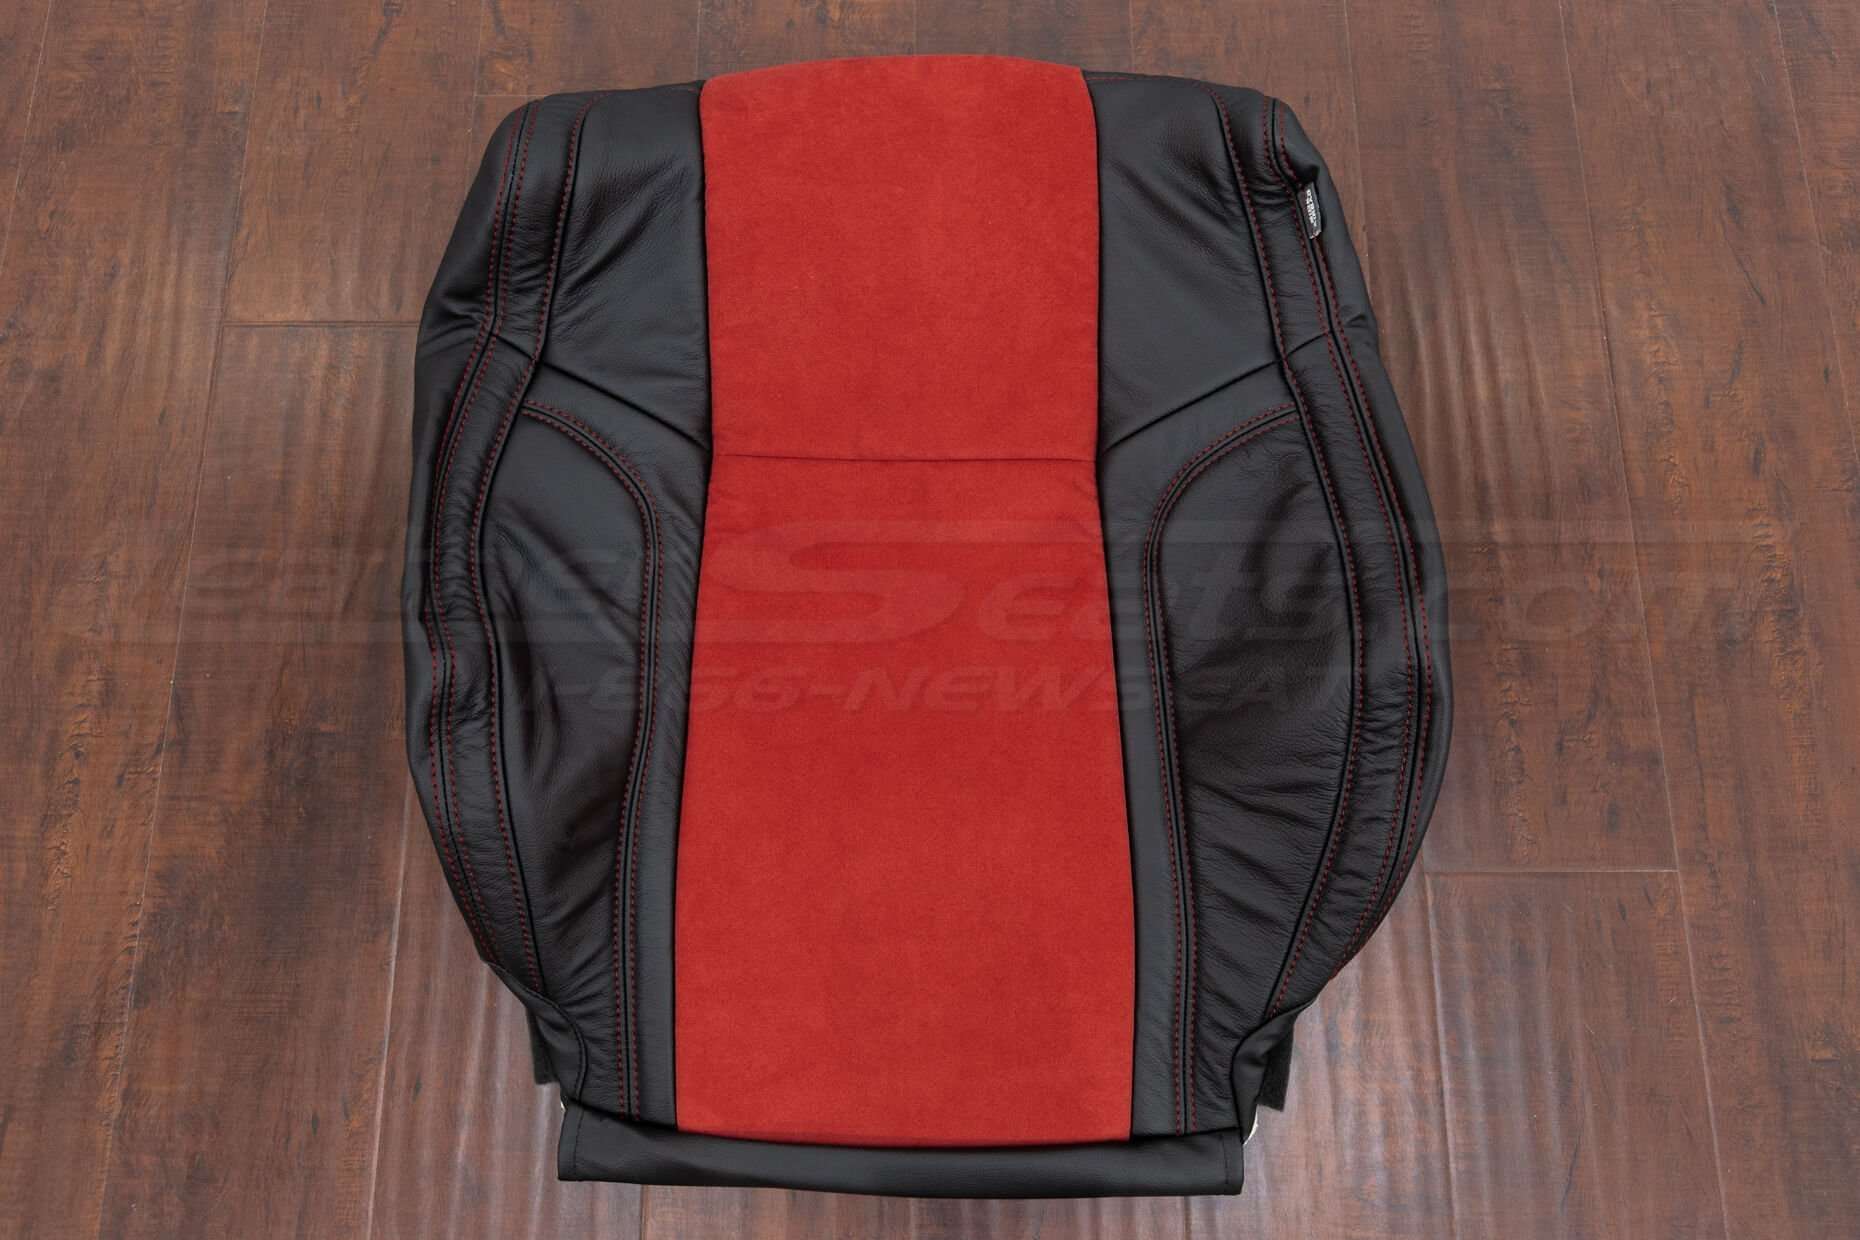 2015-2021 Dodge Challenger Upholstery Kit - Black w/ Red Suede - Front backrest